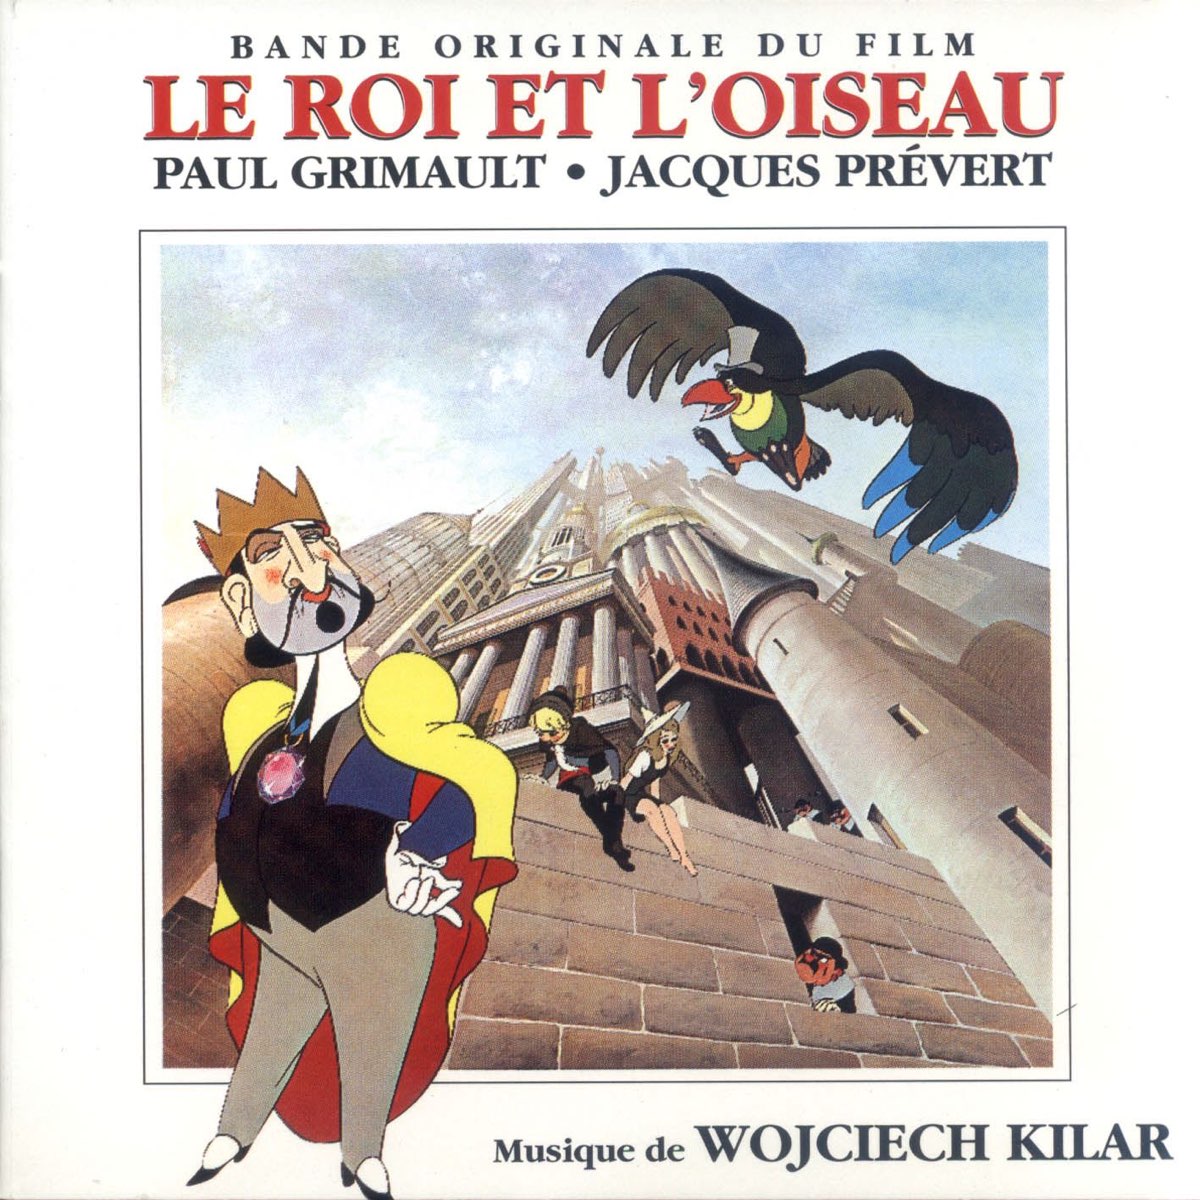 Le roi et l'oiseau (Bande originale du film) - Album by Wojciech Kilar -  Apple Music